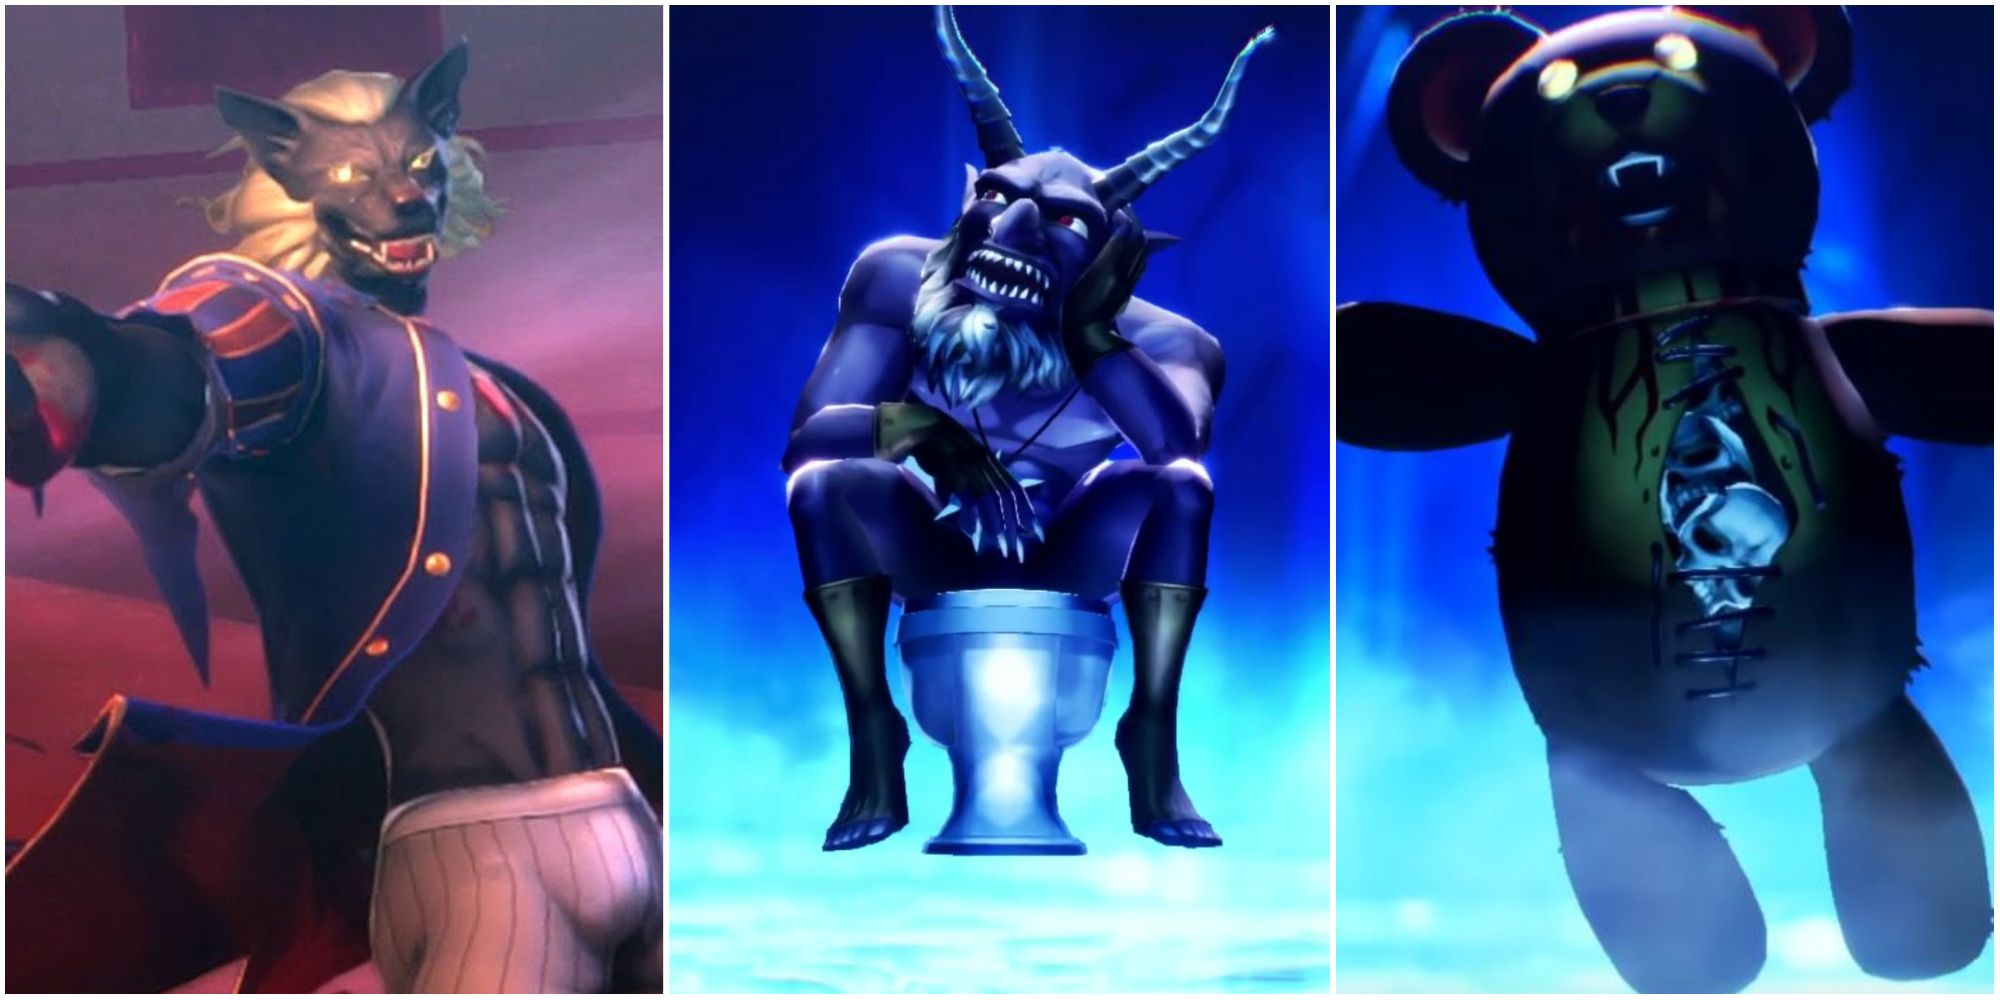 Loup Garou, Belphegor, and Bugs from Shin Megami Tensei